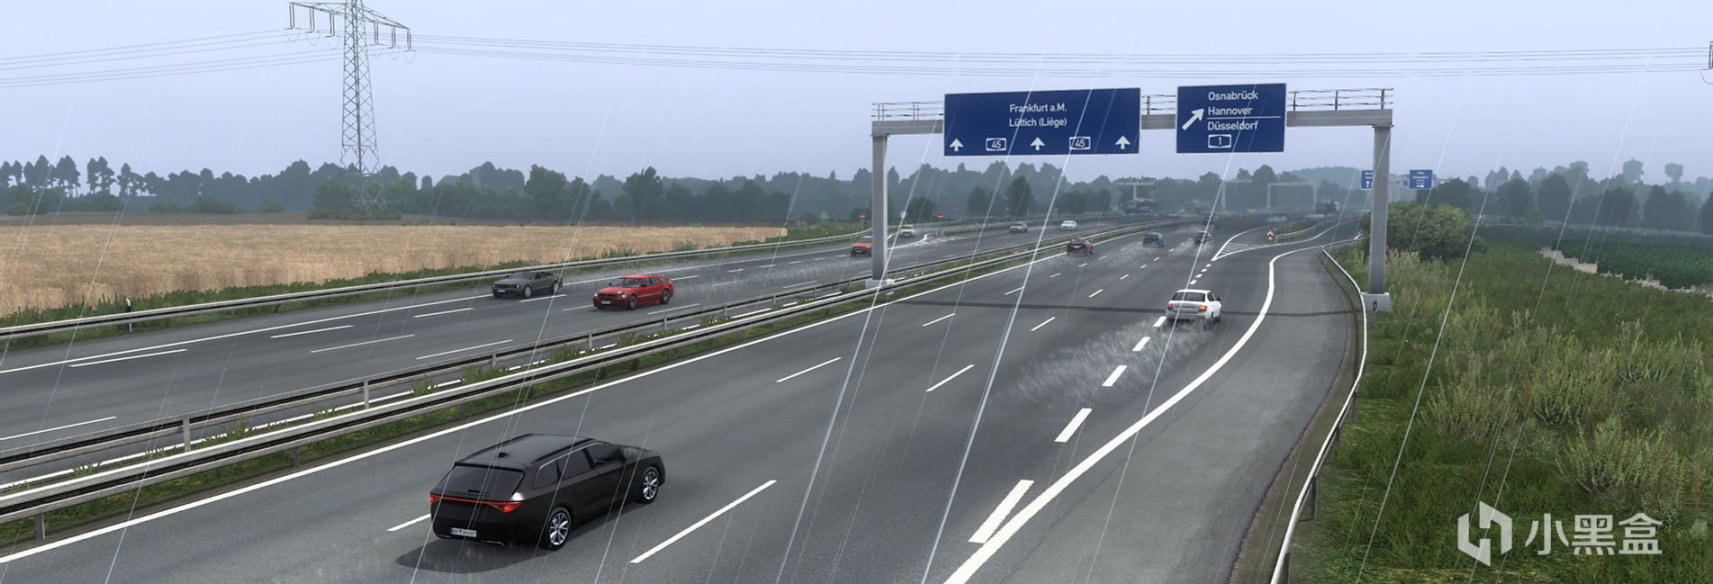 【歐洲卡車模擬2】MOD推薦【D.B Creation】D.B團隊的AI交通和其他遊戲內容模組-第28張